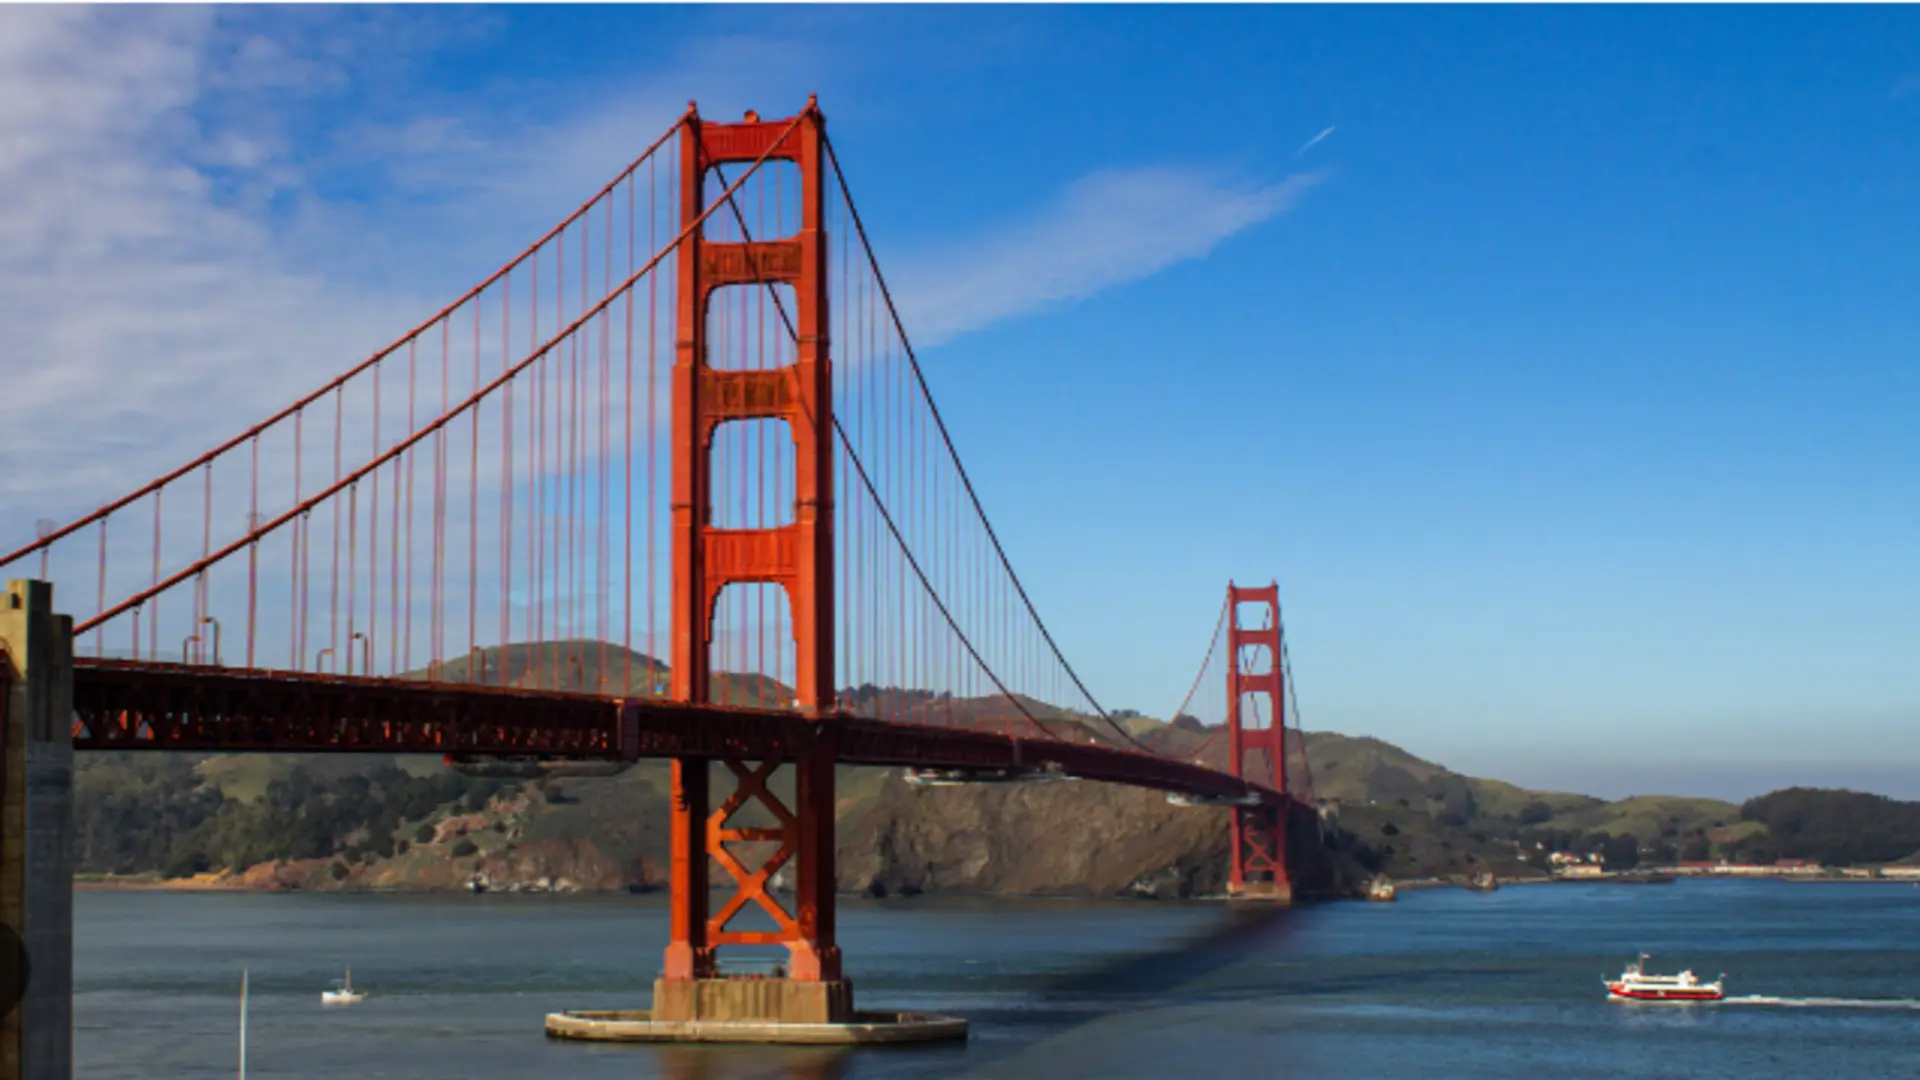 Golden Gate Bridge Memorial Day Weekend